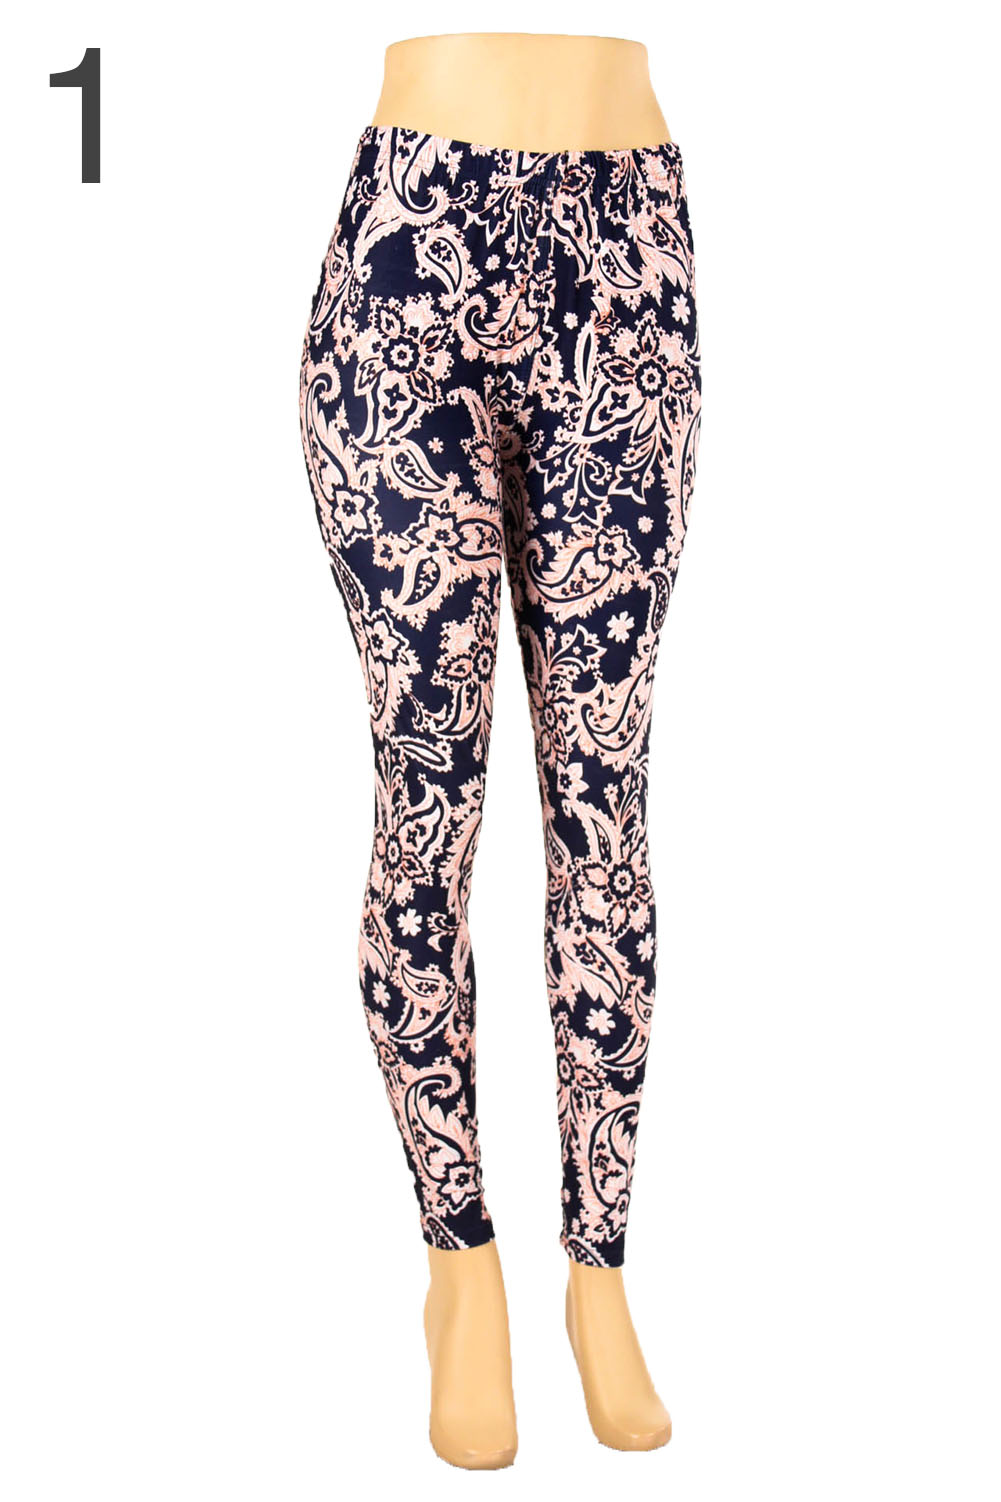 Plus Size Print Leggings Soft Stretch Pants Fashion Color Floral New 1X ...